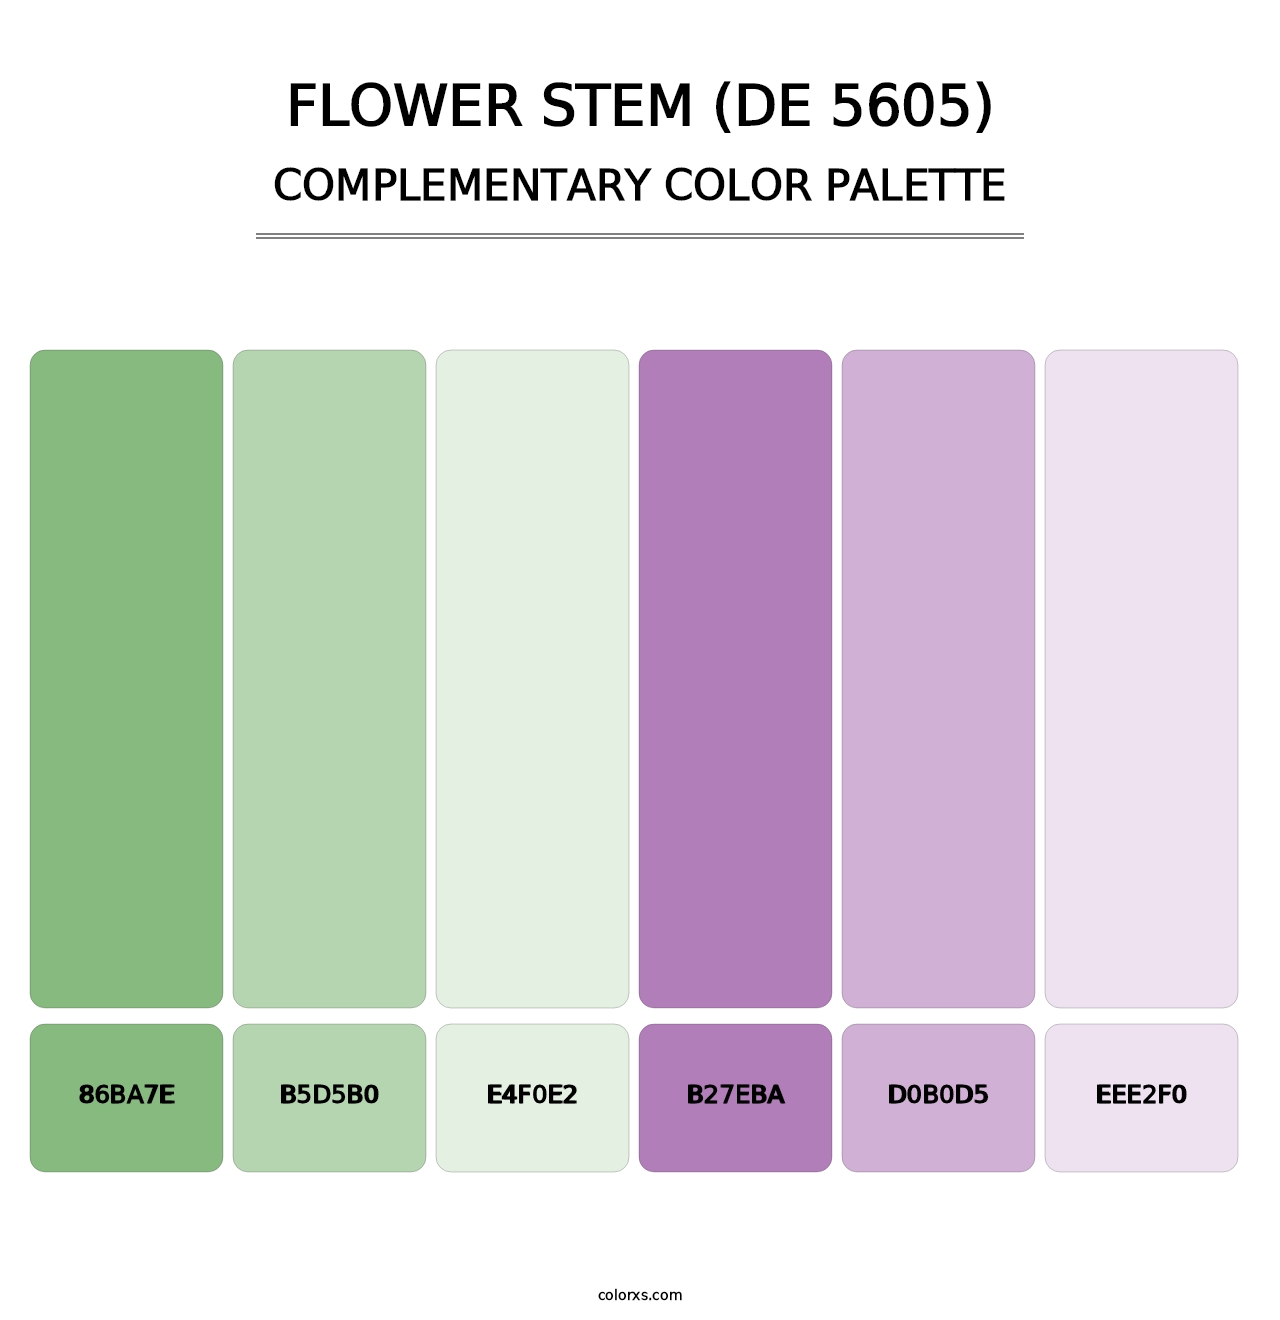 Flower Stem (DE 5605) - Complementary Color Palette